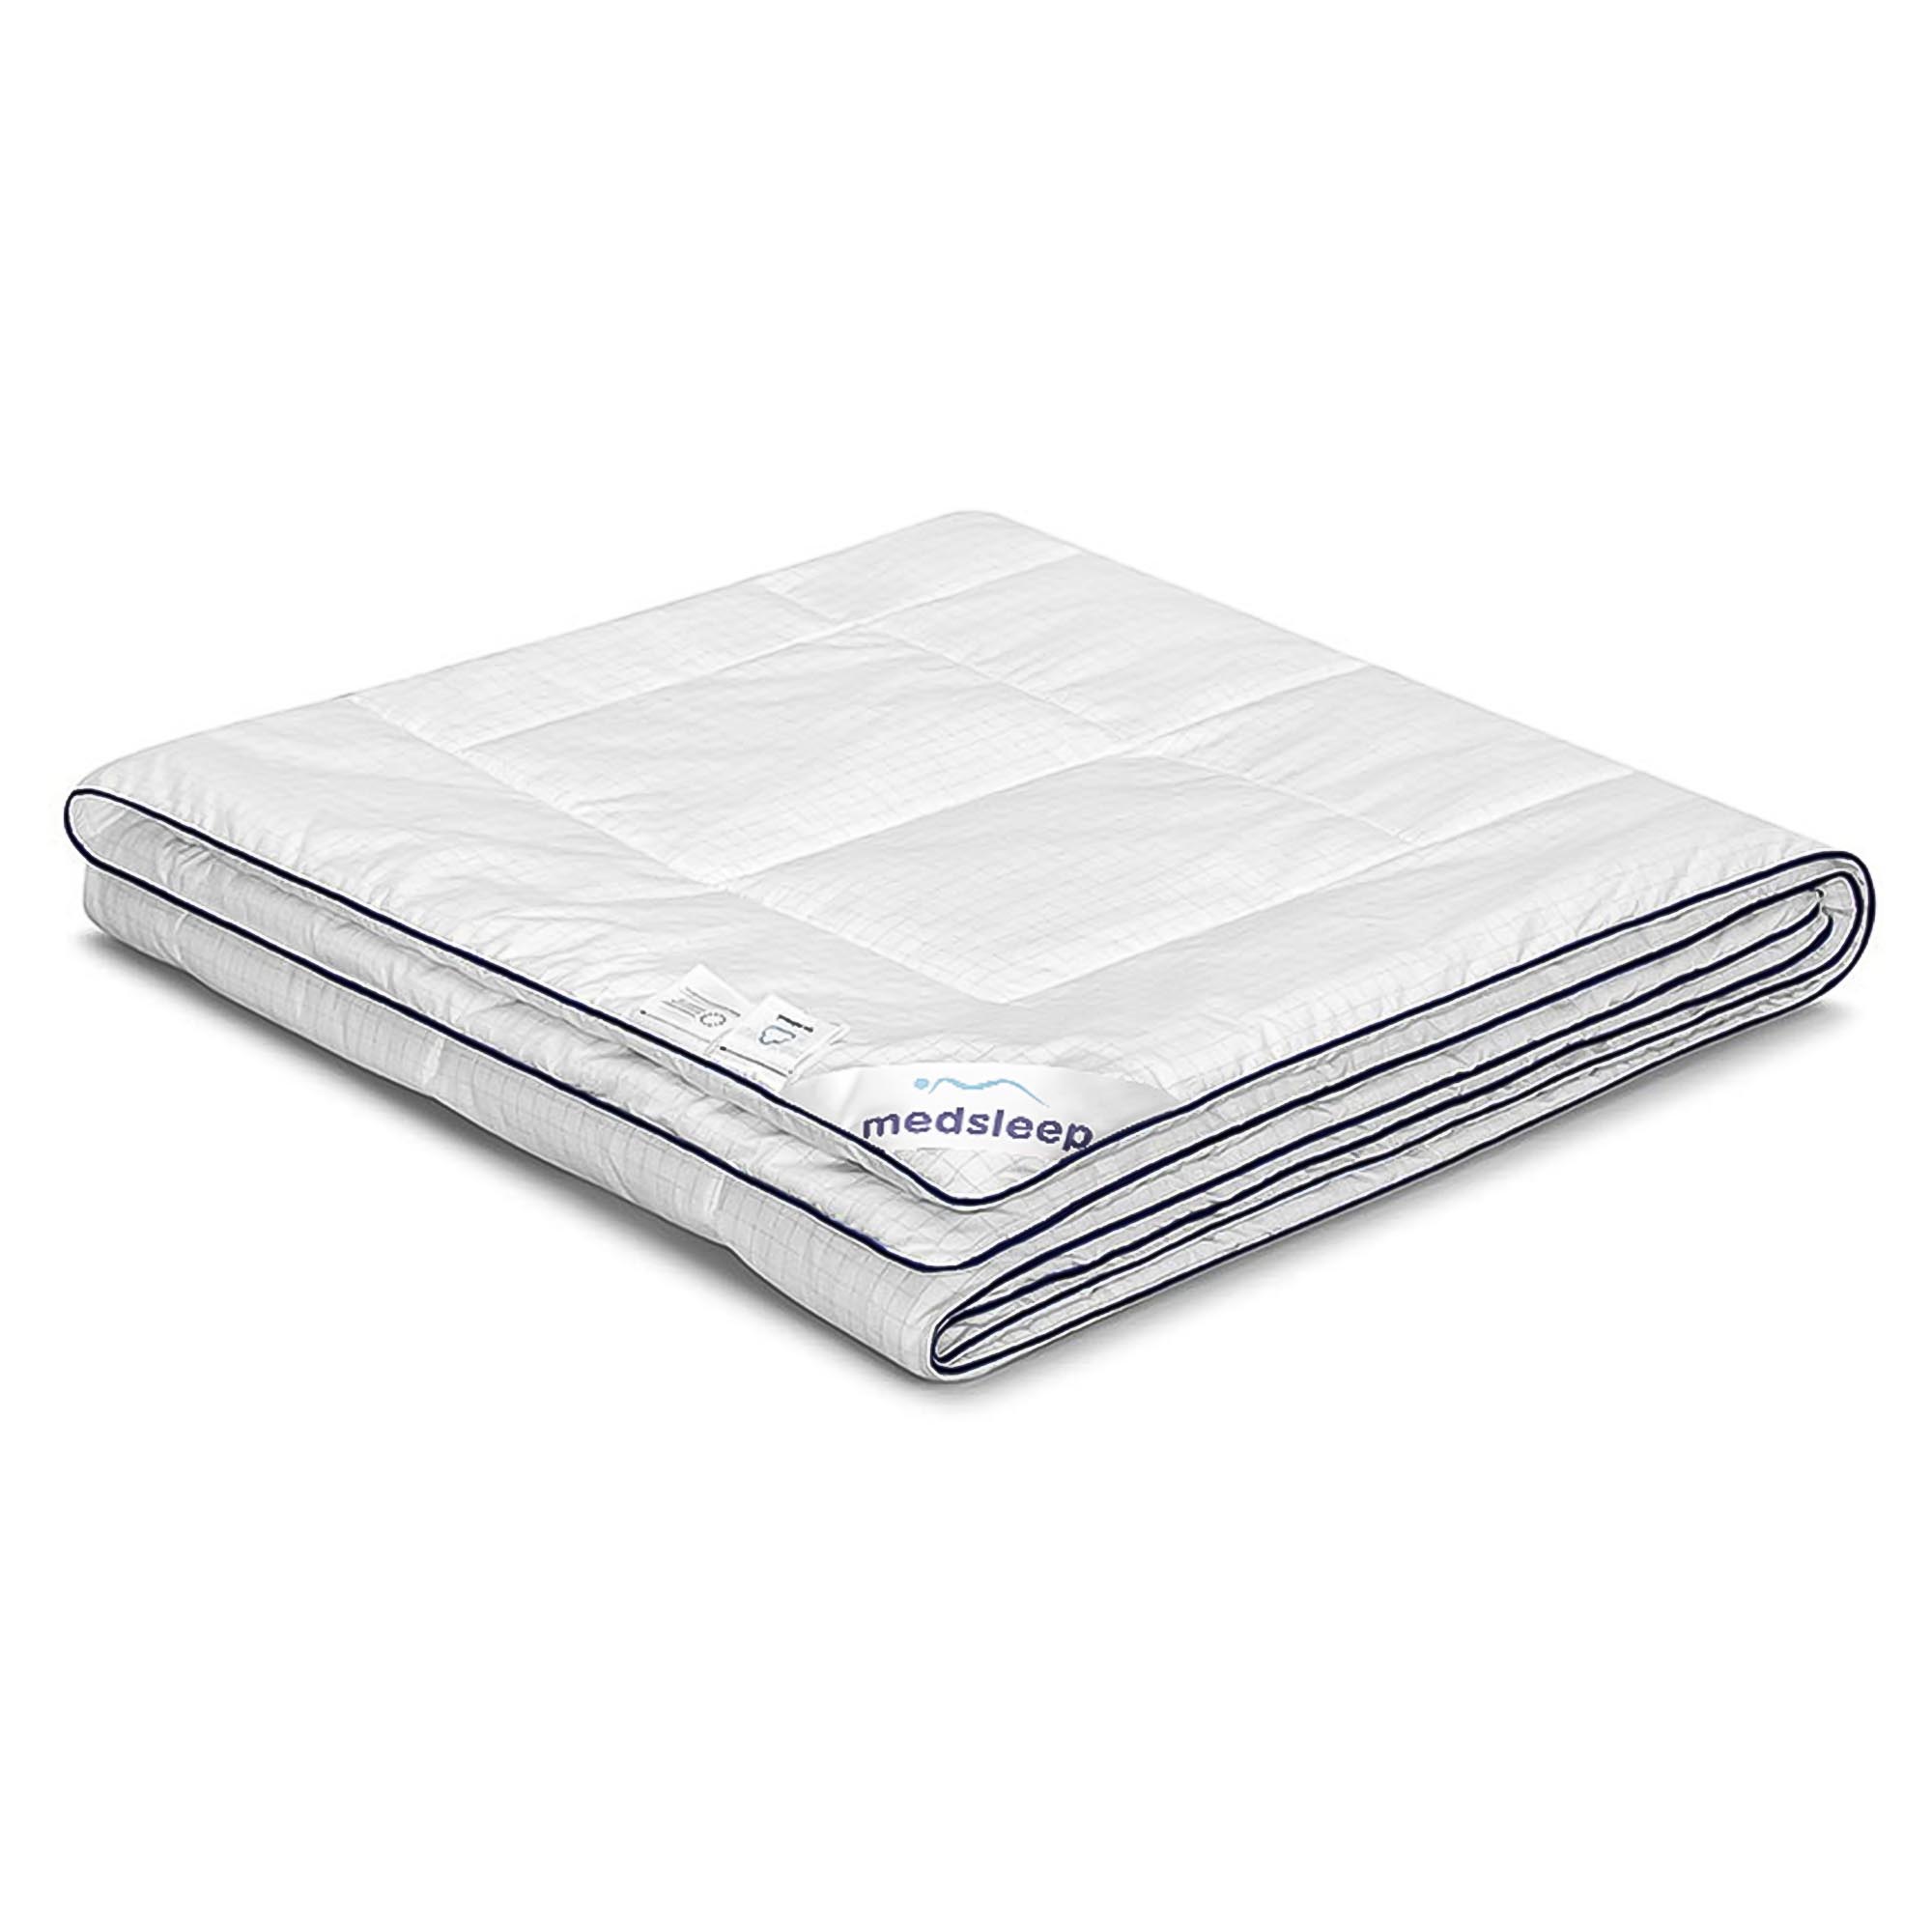 Одеяло Medsleep Nubi белое 200х210 см одеяло утяжелённое medsleep дефорте белое 140х200 см